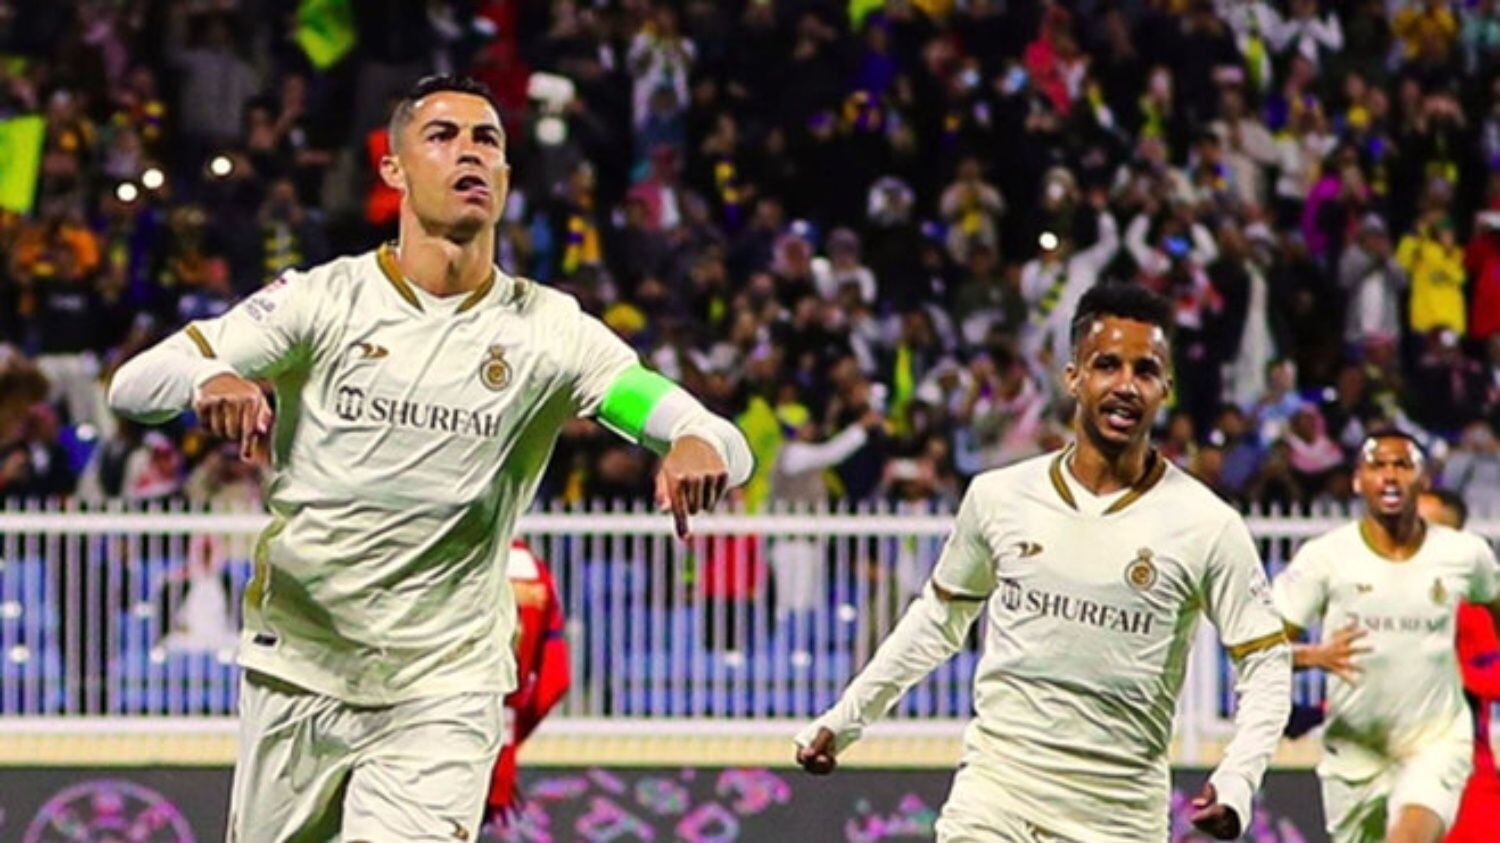 La cabra intacta, el nuevo récord realizado por Cristiano Ronaldo